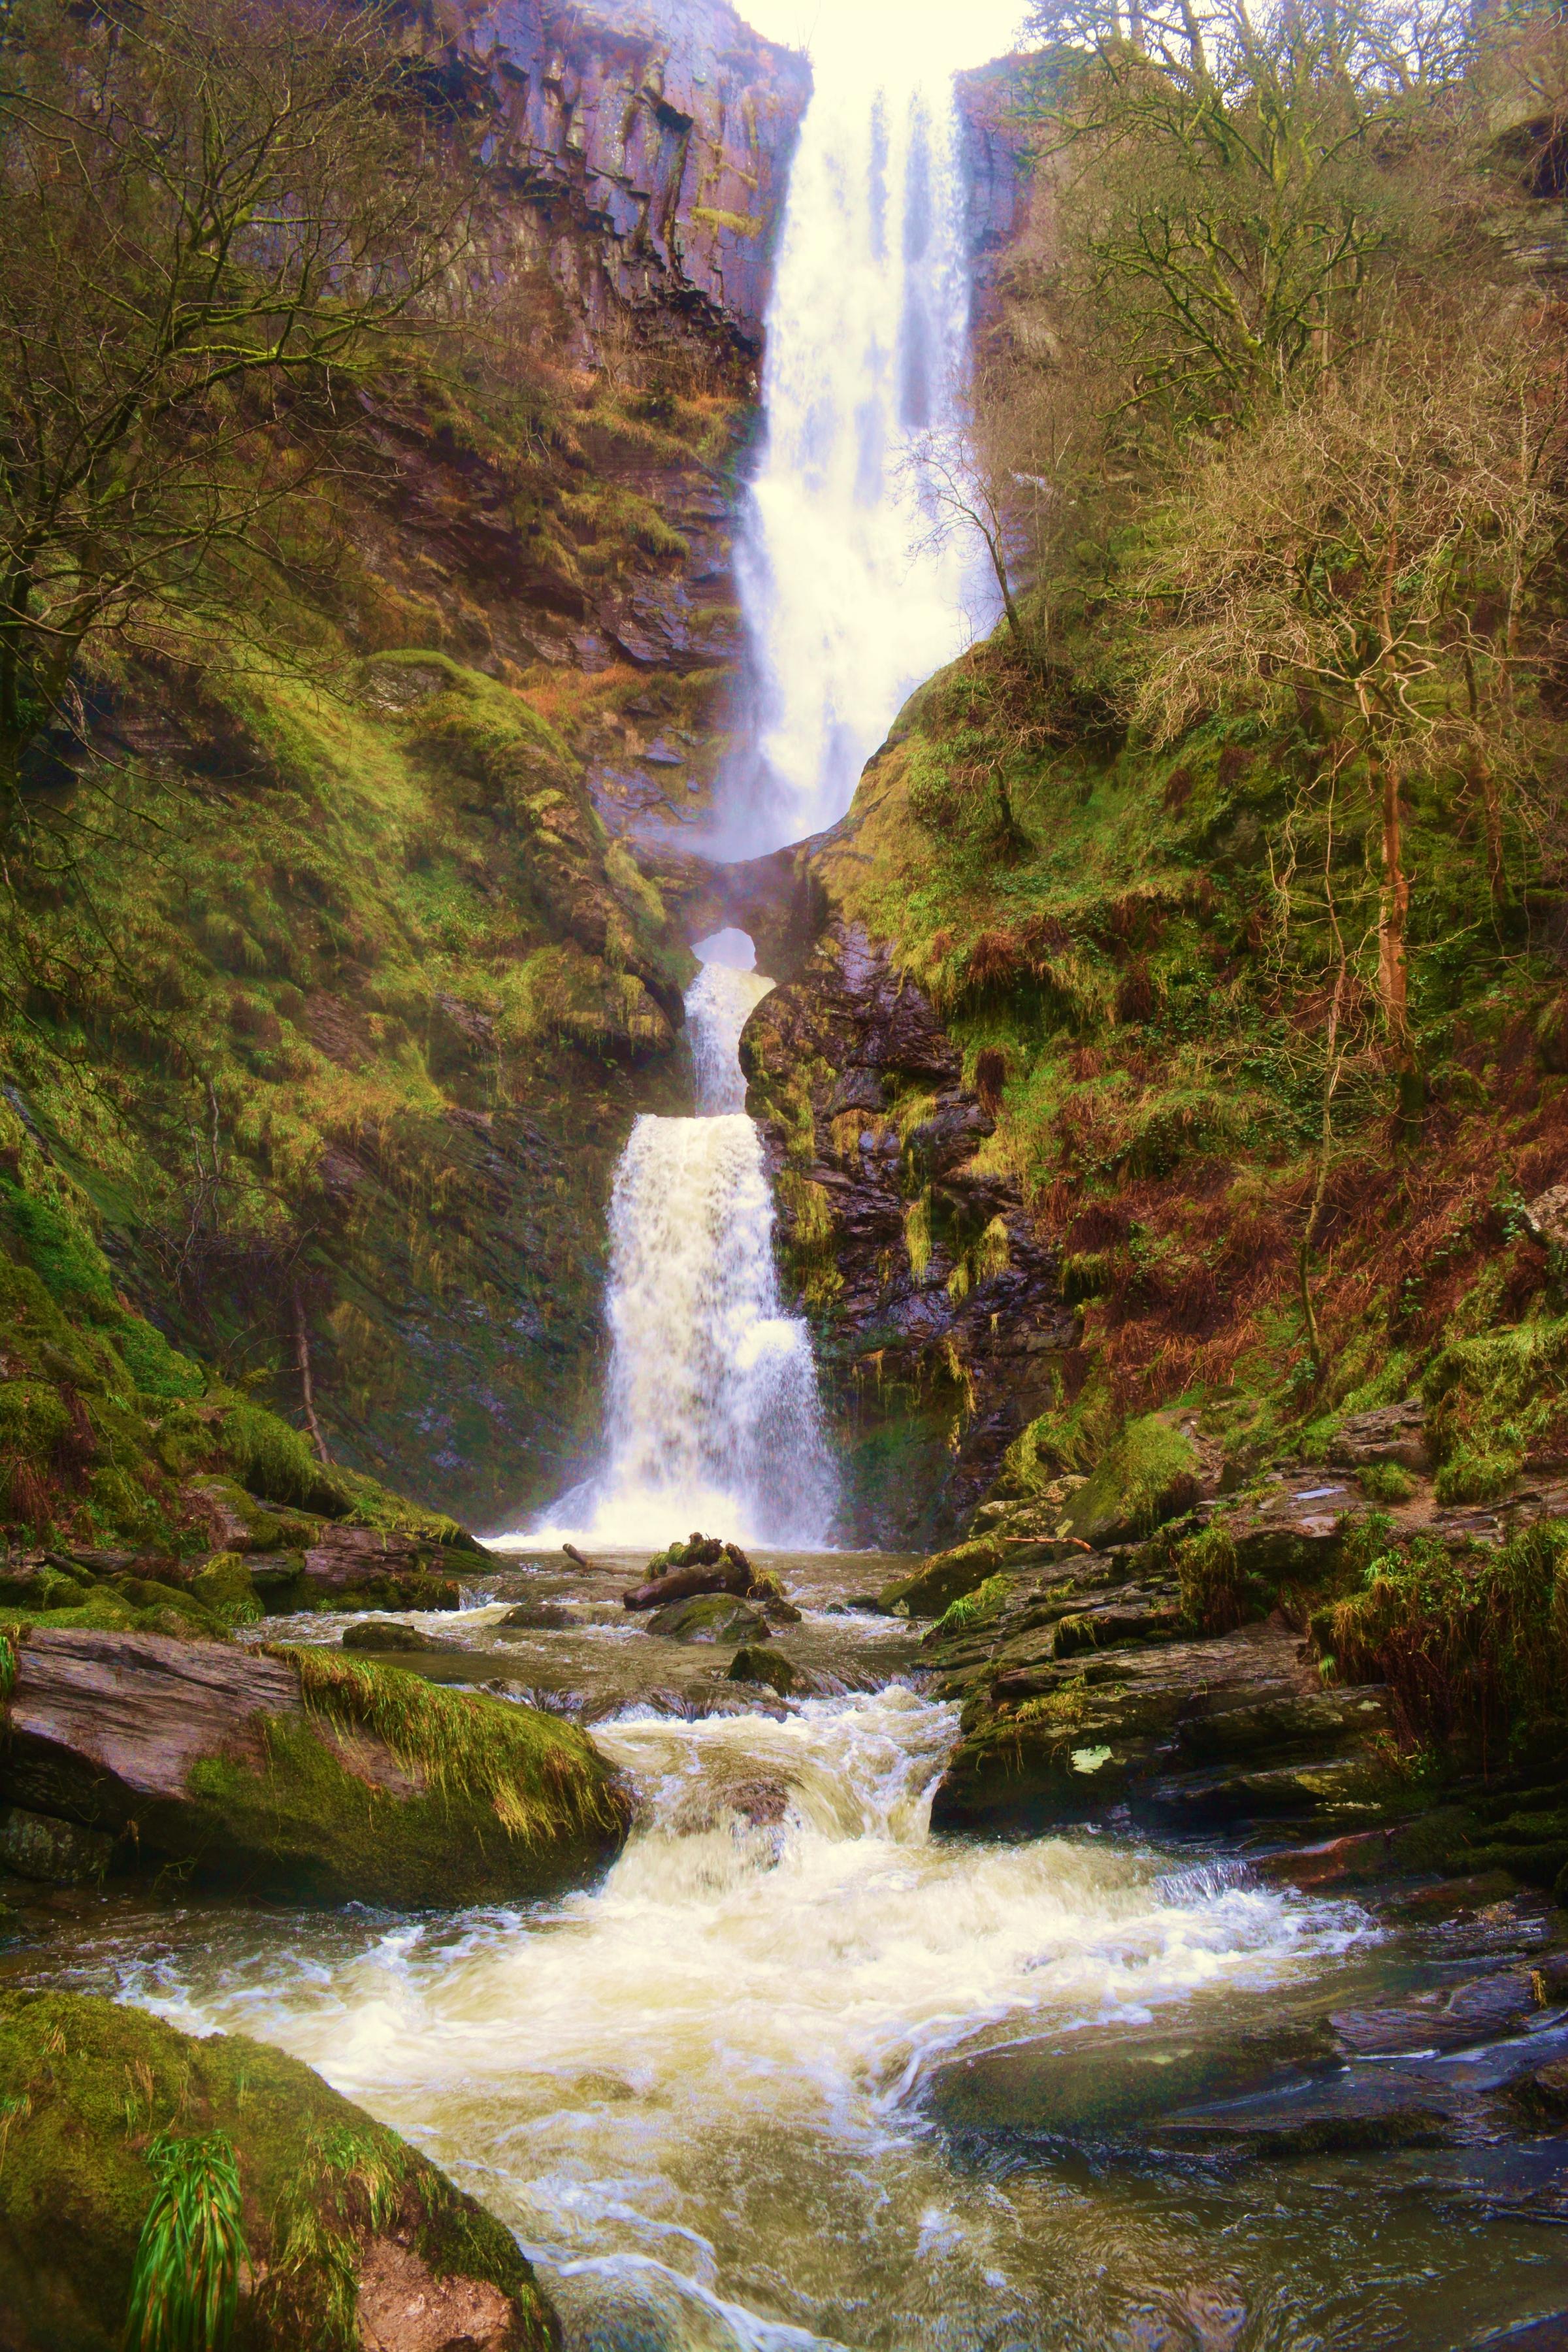 Llanrhaeadr waterfall. Picture by Elwyn Owen.